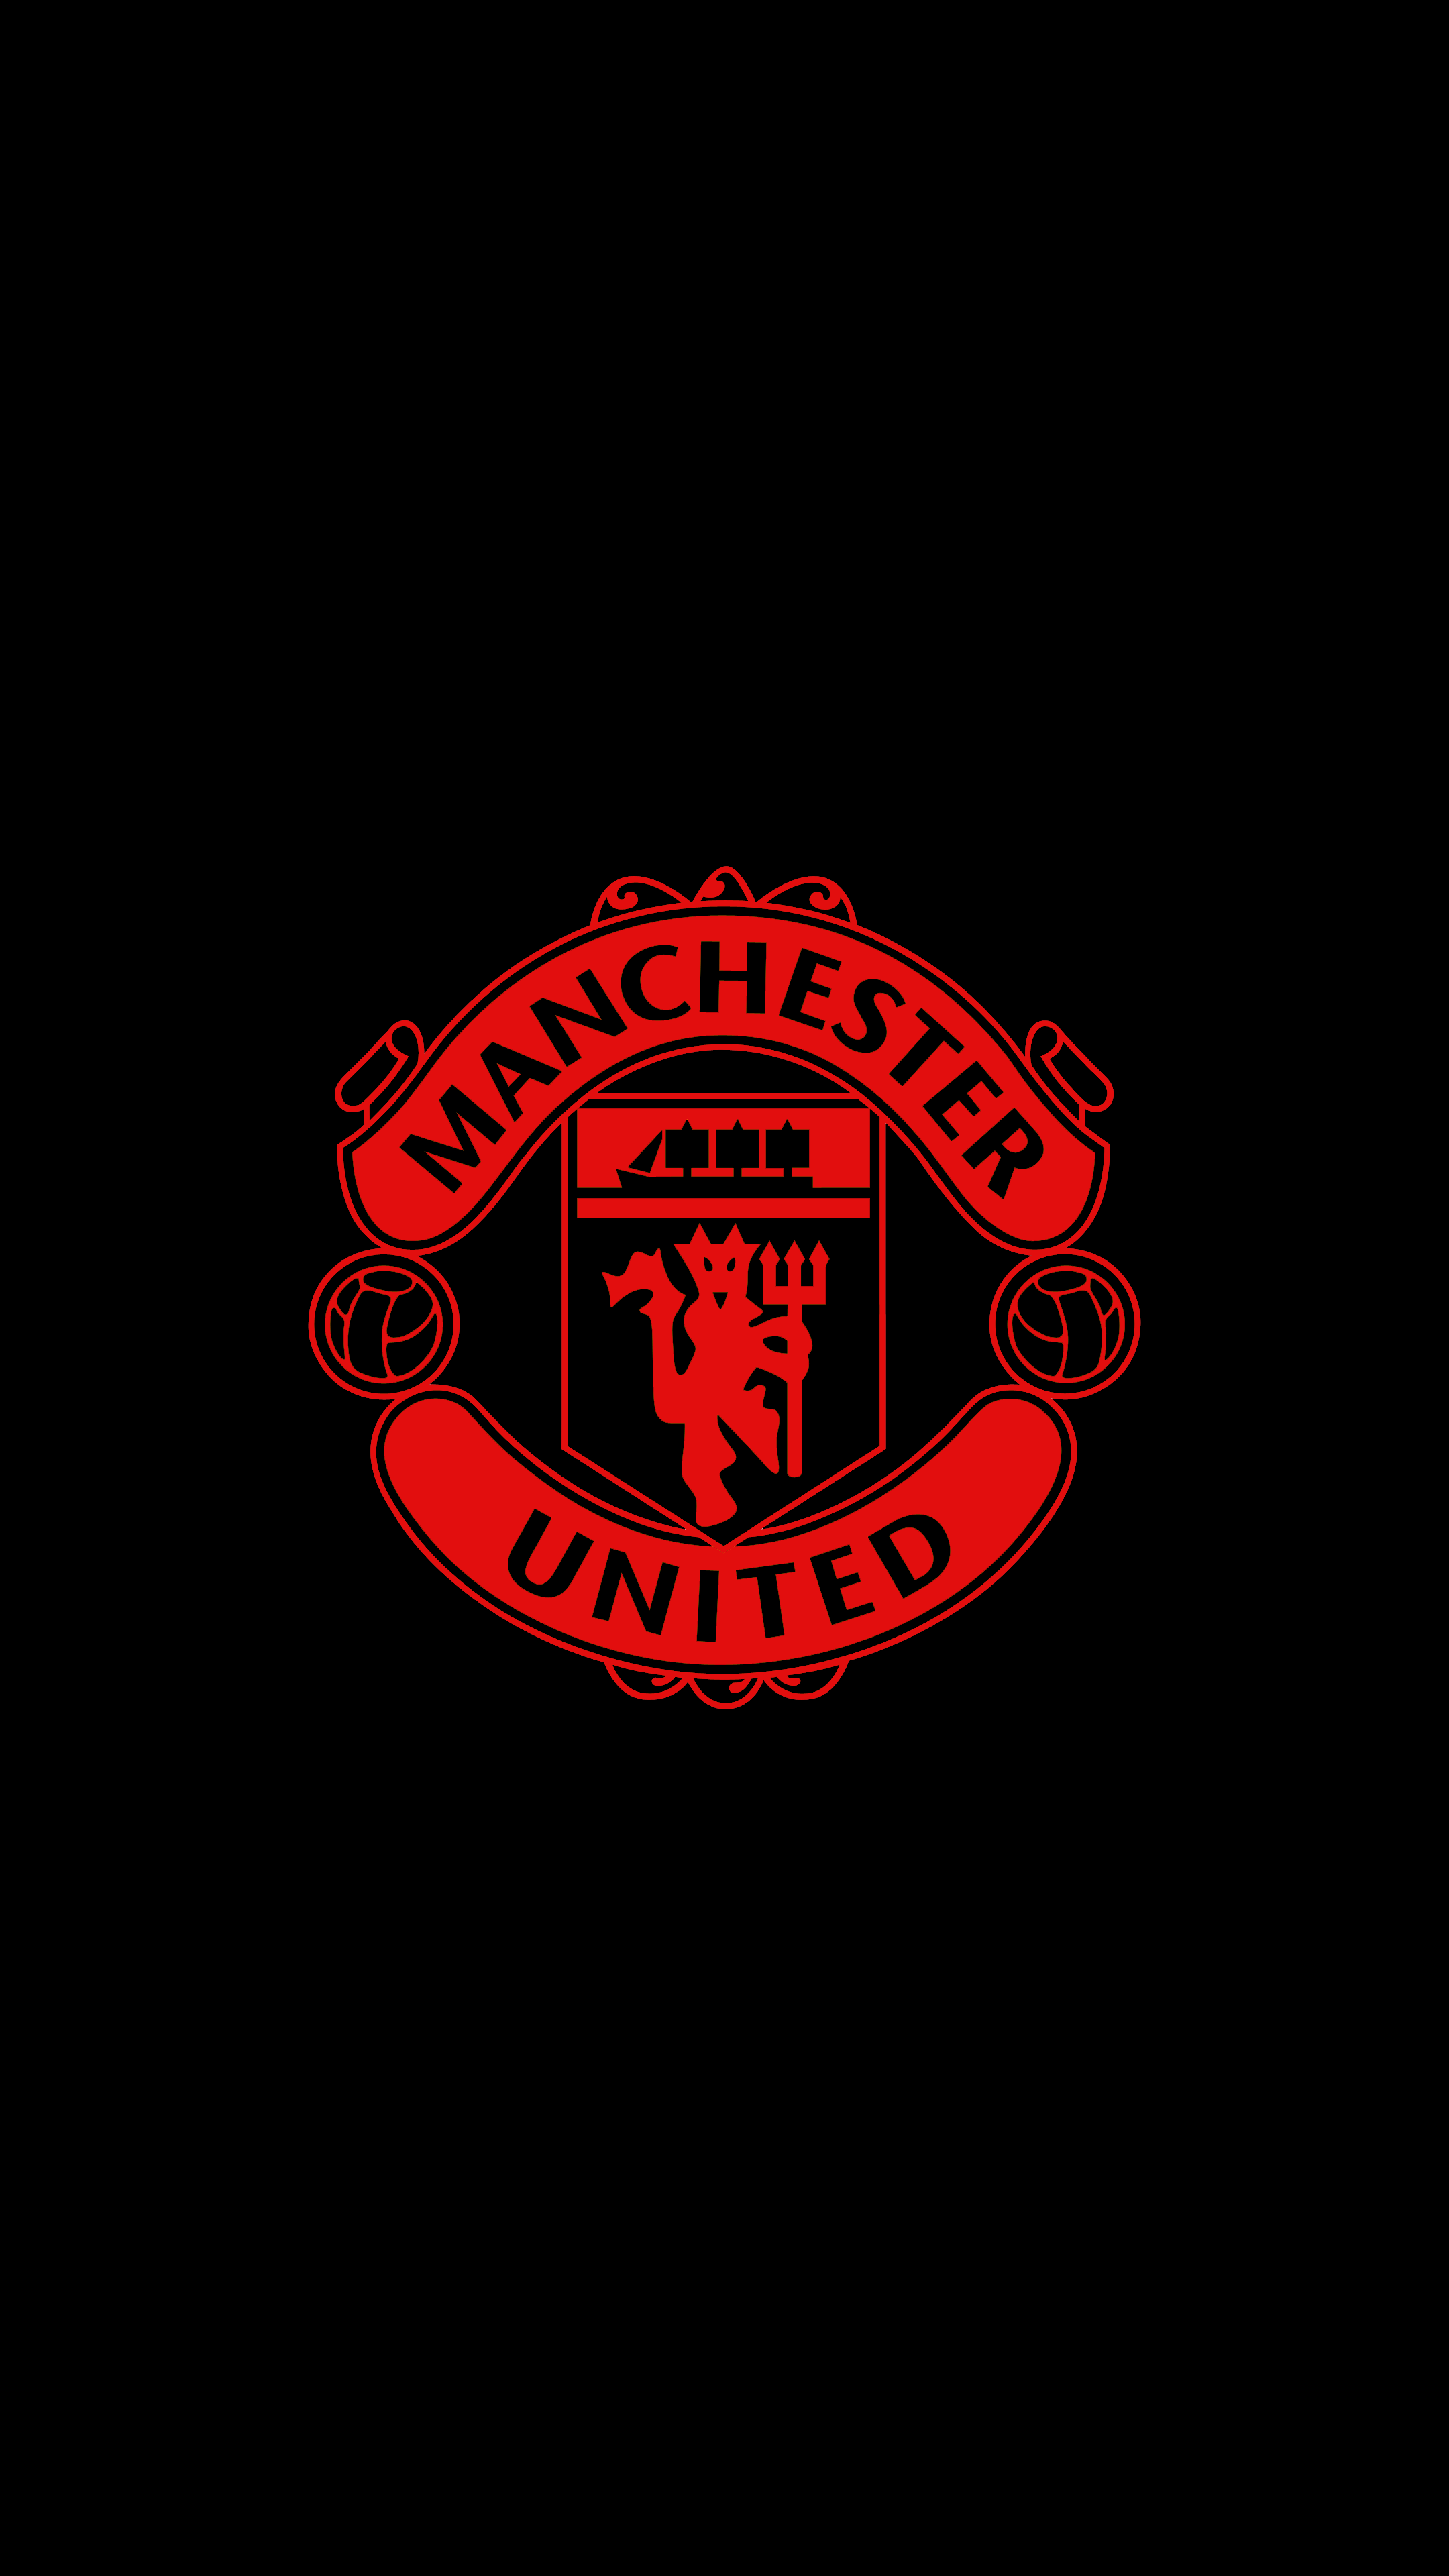 Manchester United 4K Wallpaper United 4K Wallpaper. Manchester united wallpaper, Manchester united logo, Manchester united wallpaper iphone